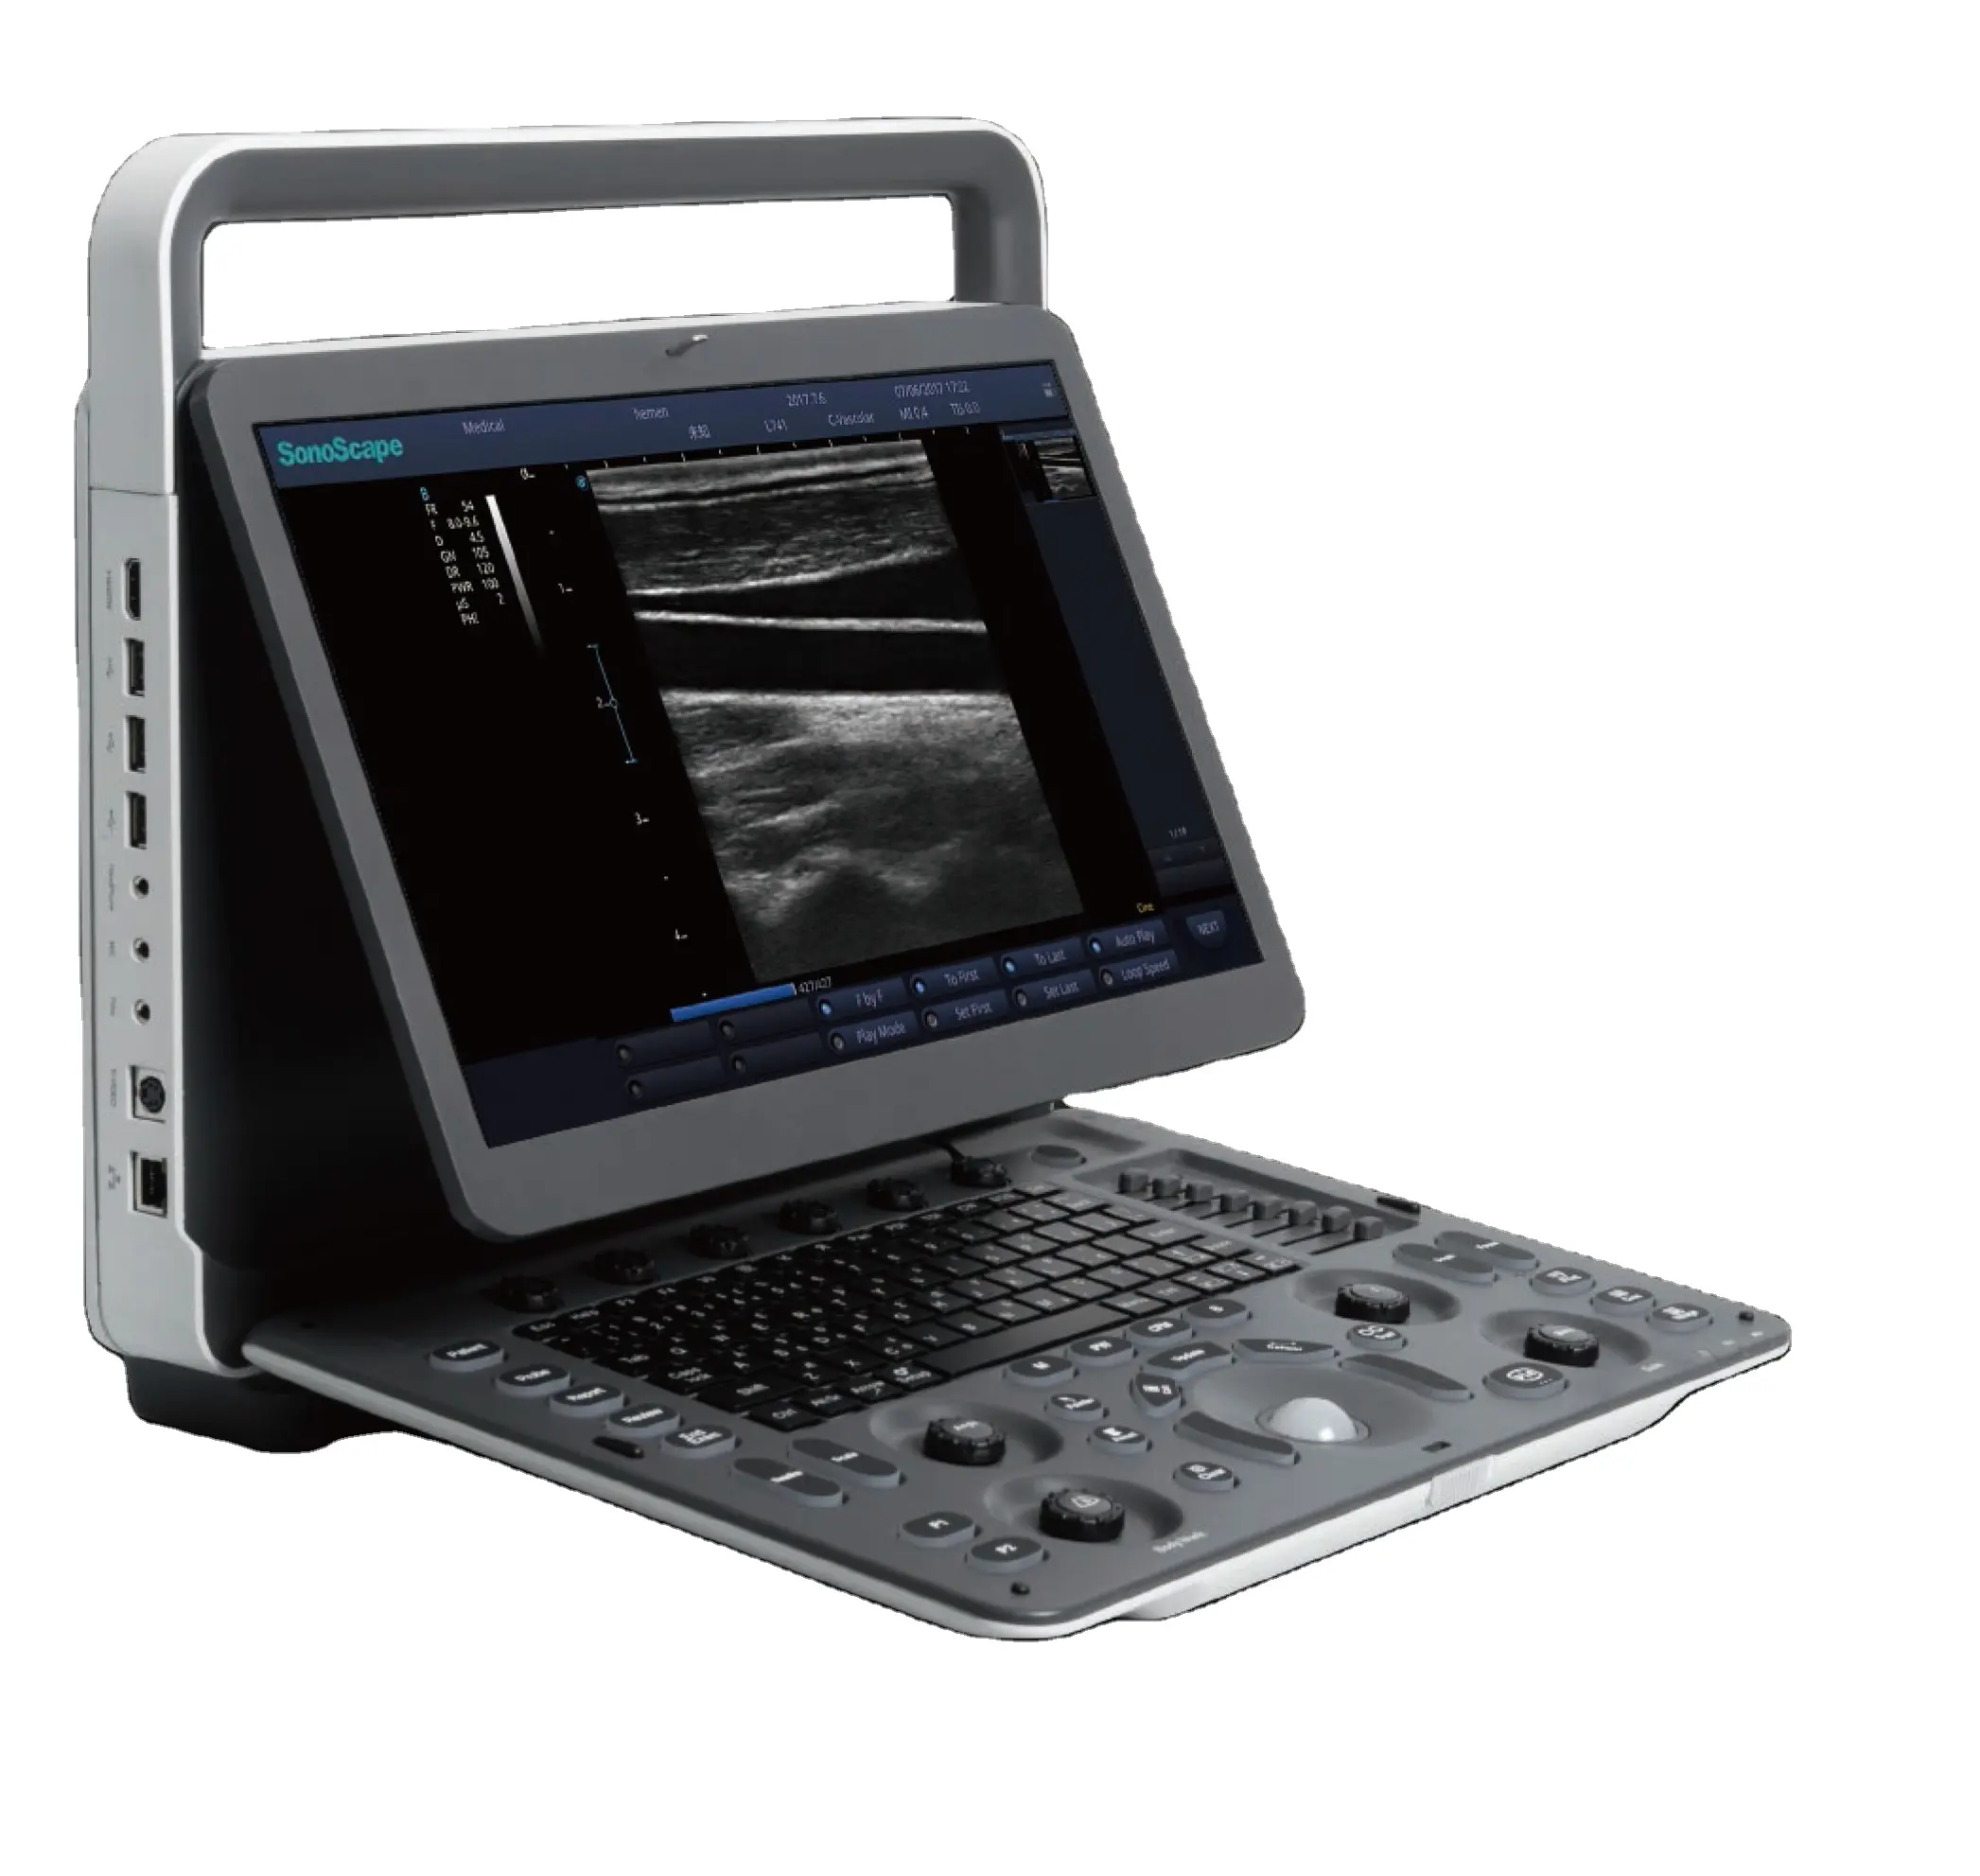 Laptop Sonoscape E1 Digital Ultrasound System/scanner portatile/Sonoscape ultrasound machine